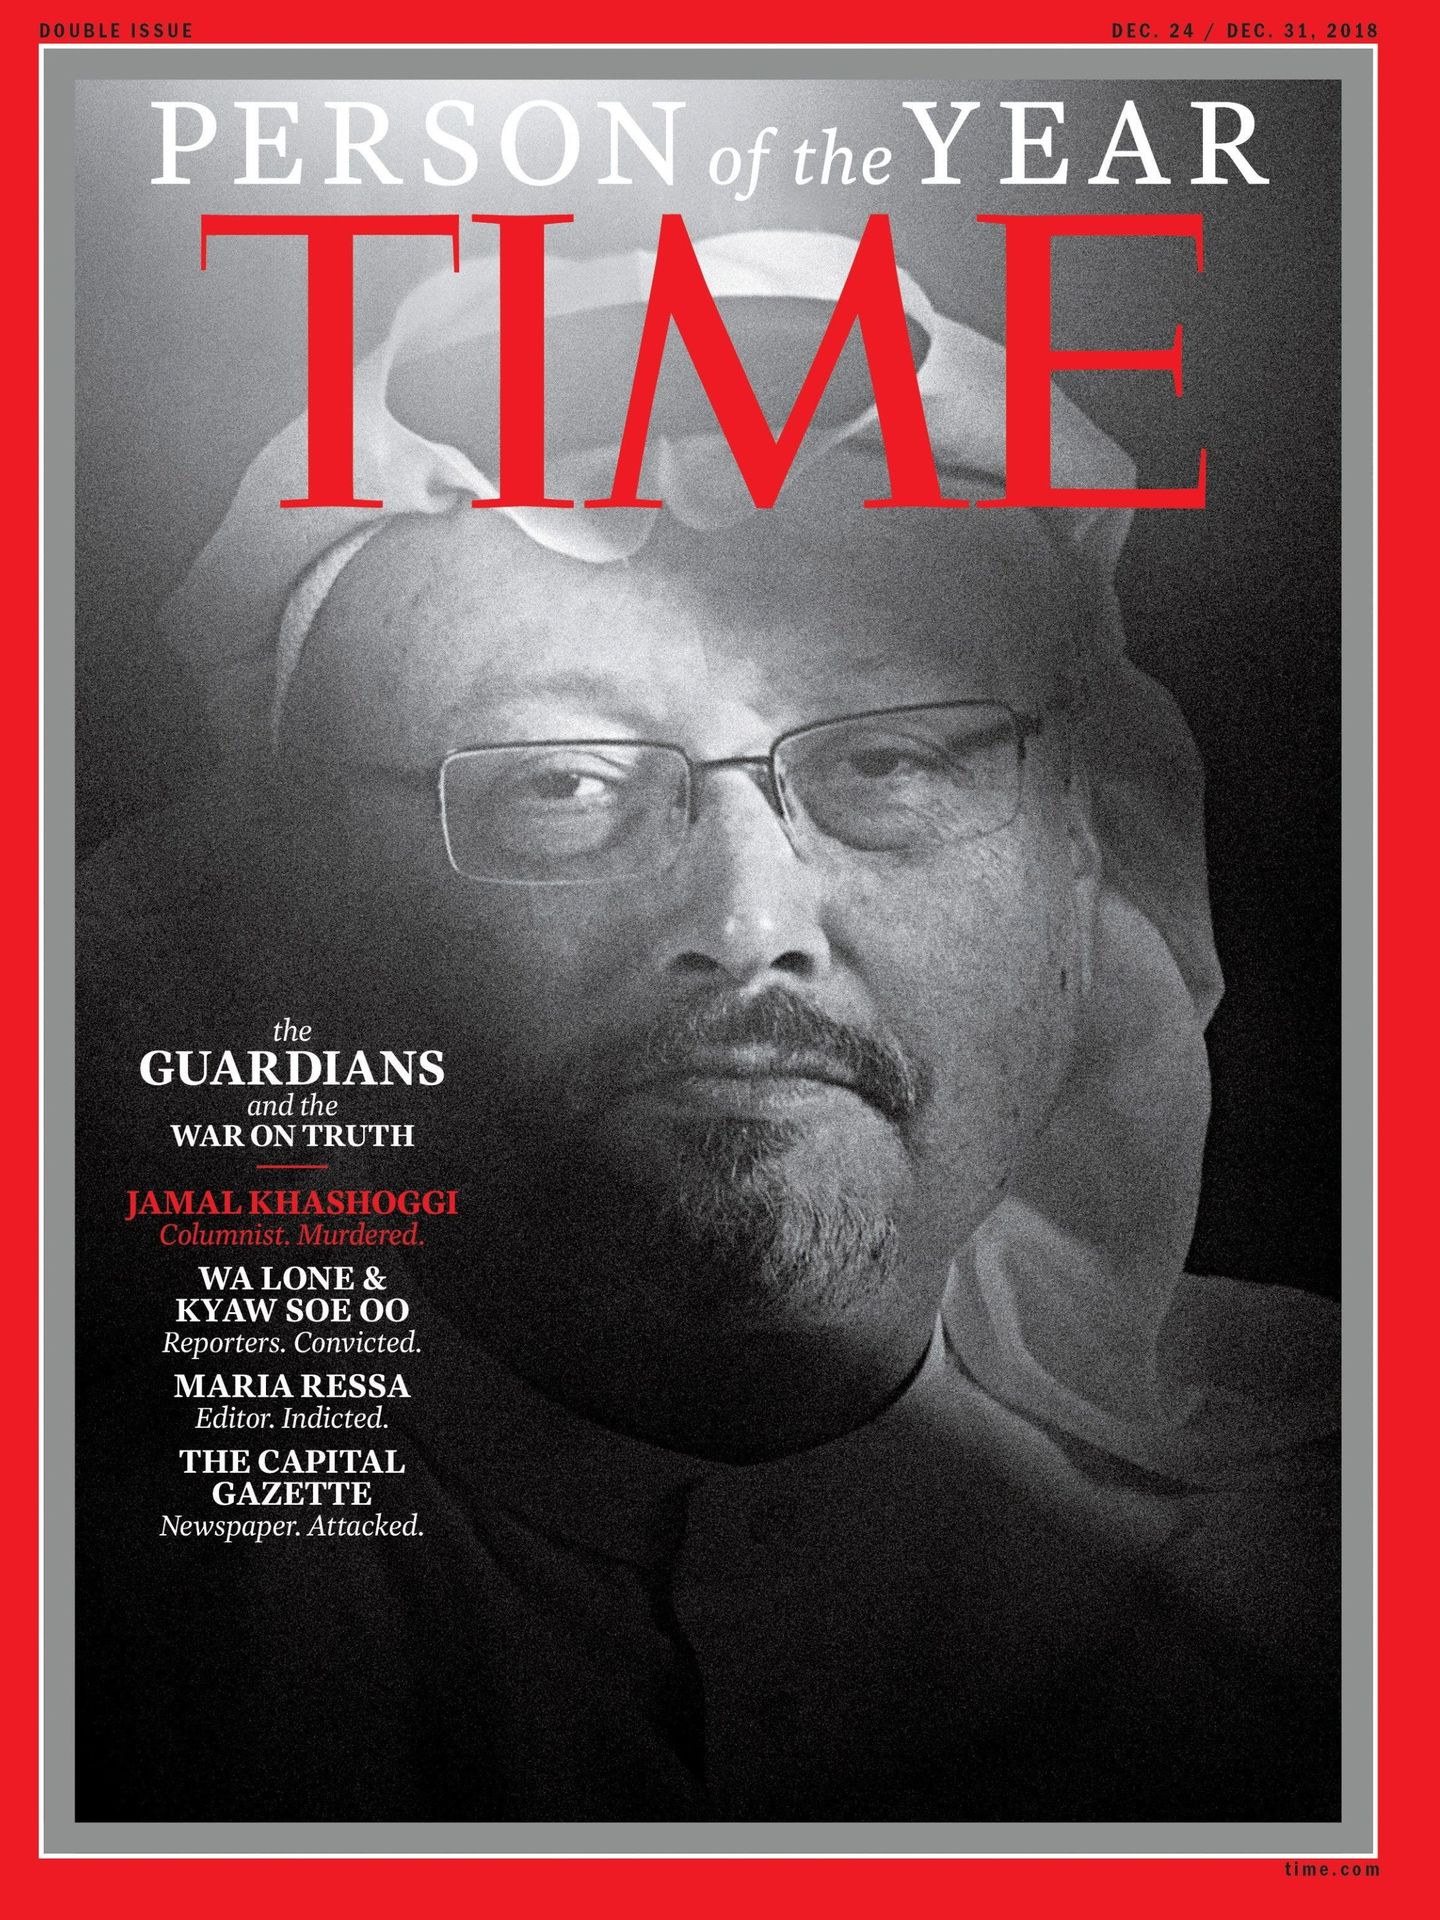 El periodista saudí asesinado Jamal Khashoggi, elegido por 'Time' personalidad del año 2018. (EFE)